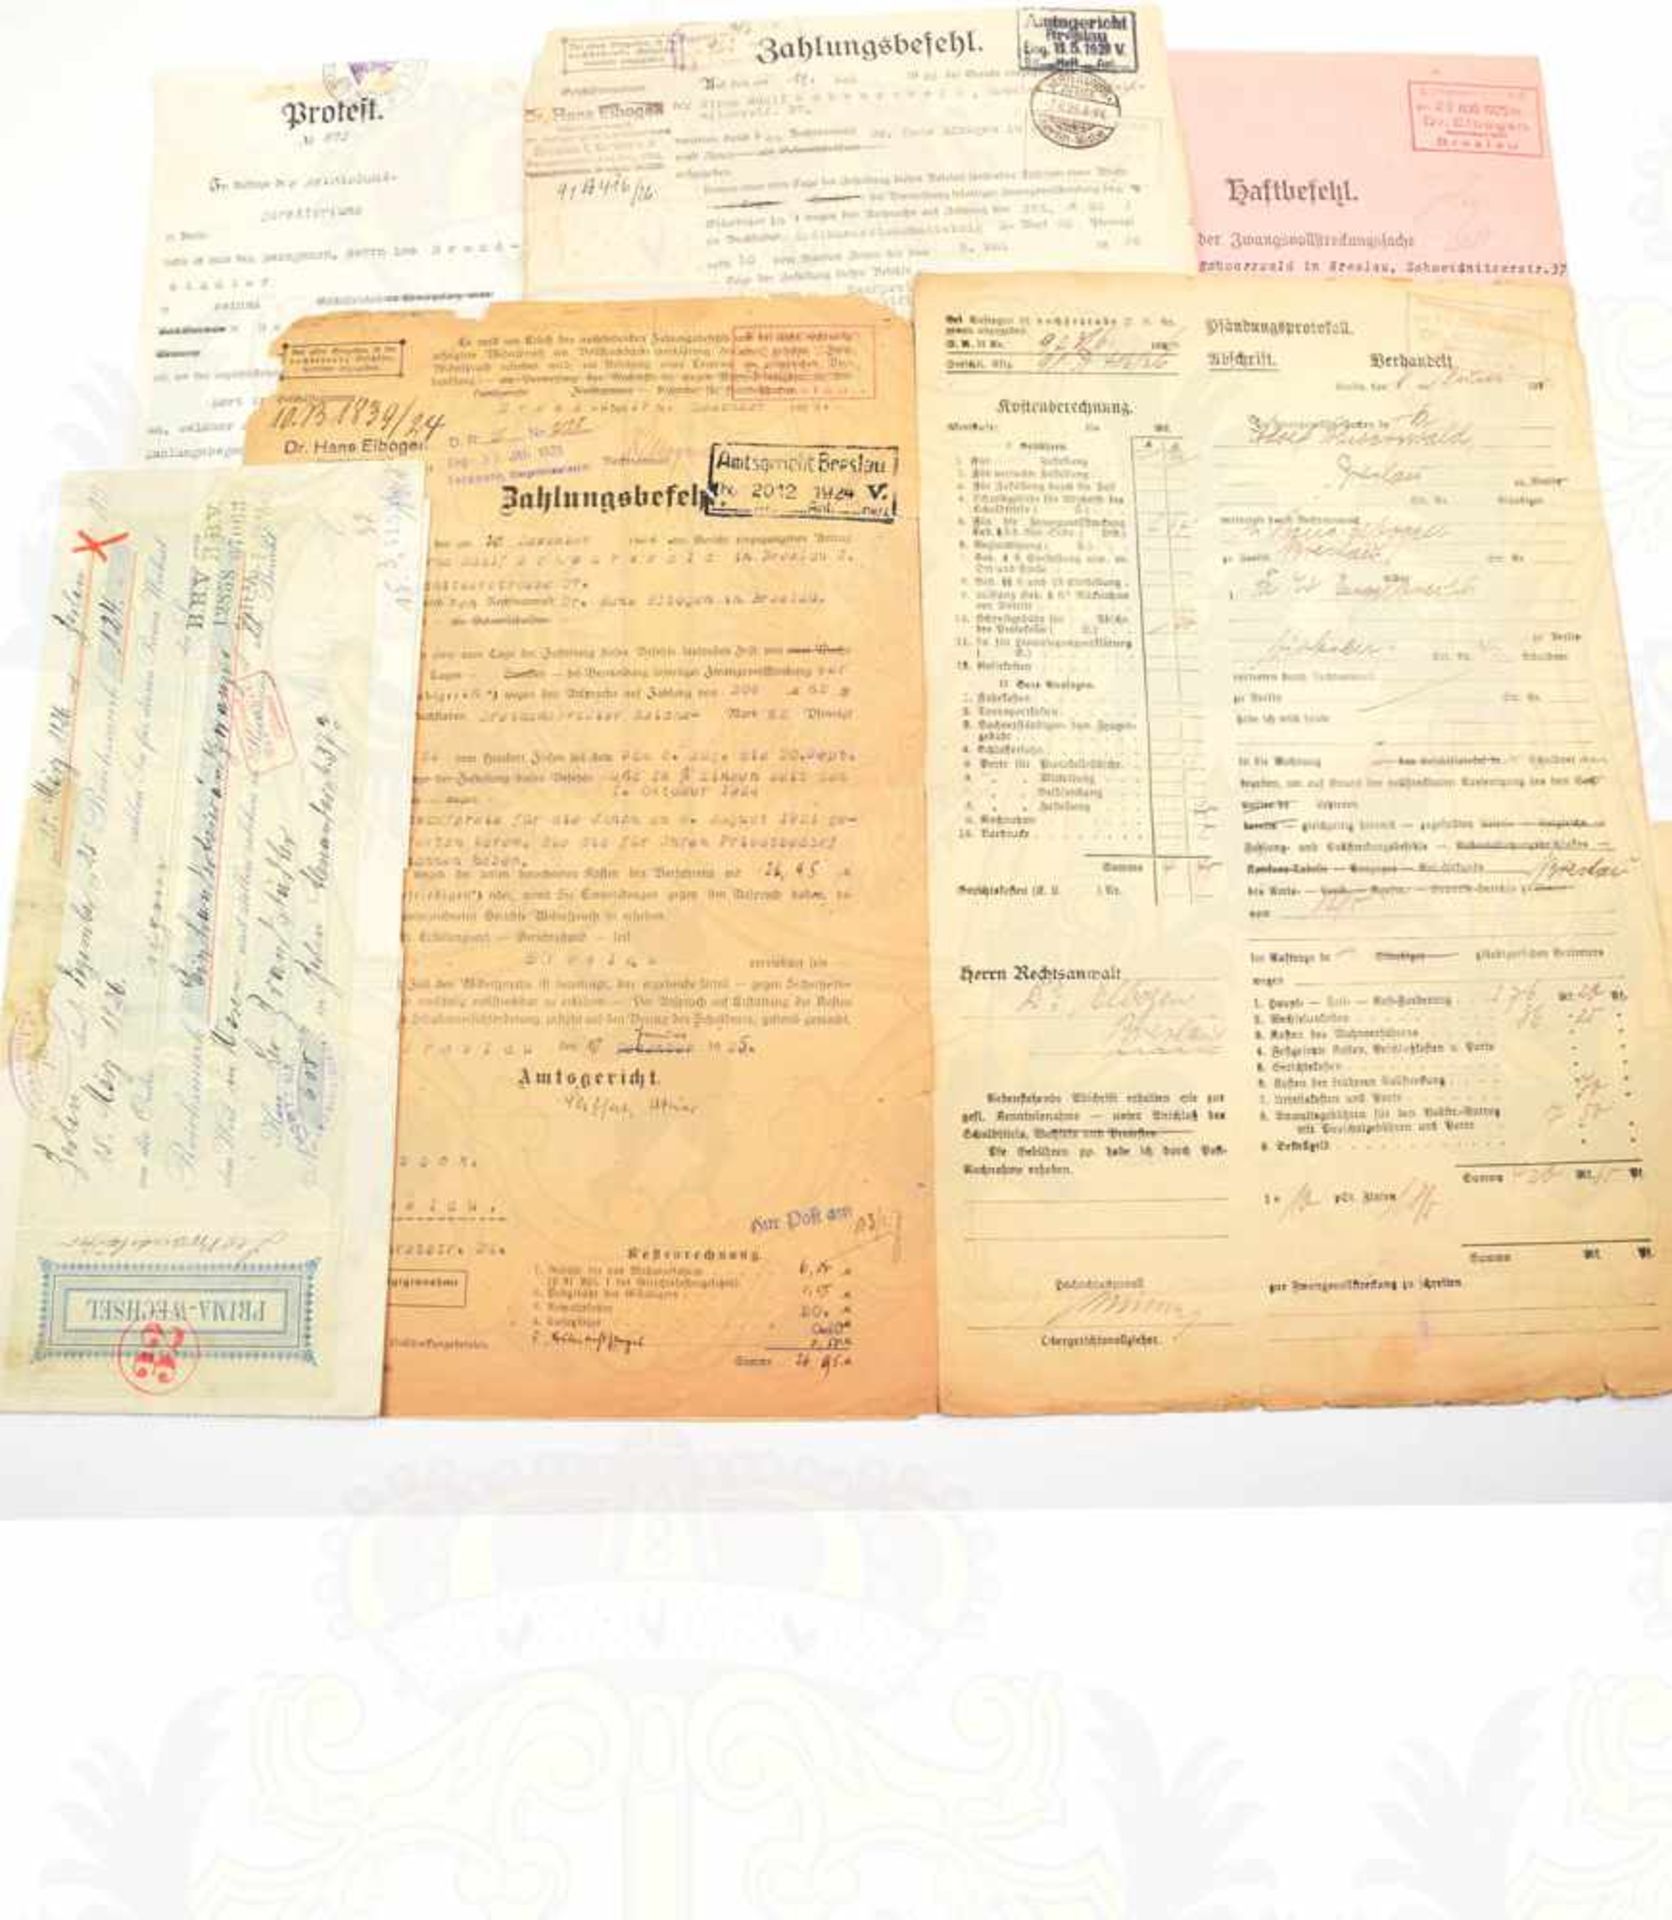 DOKUMENTENKONVOLUT, 25 Teile, 1925-1928, Gerichtsunterlagen, Zahlungsbefehle, Haftbefehle,